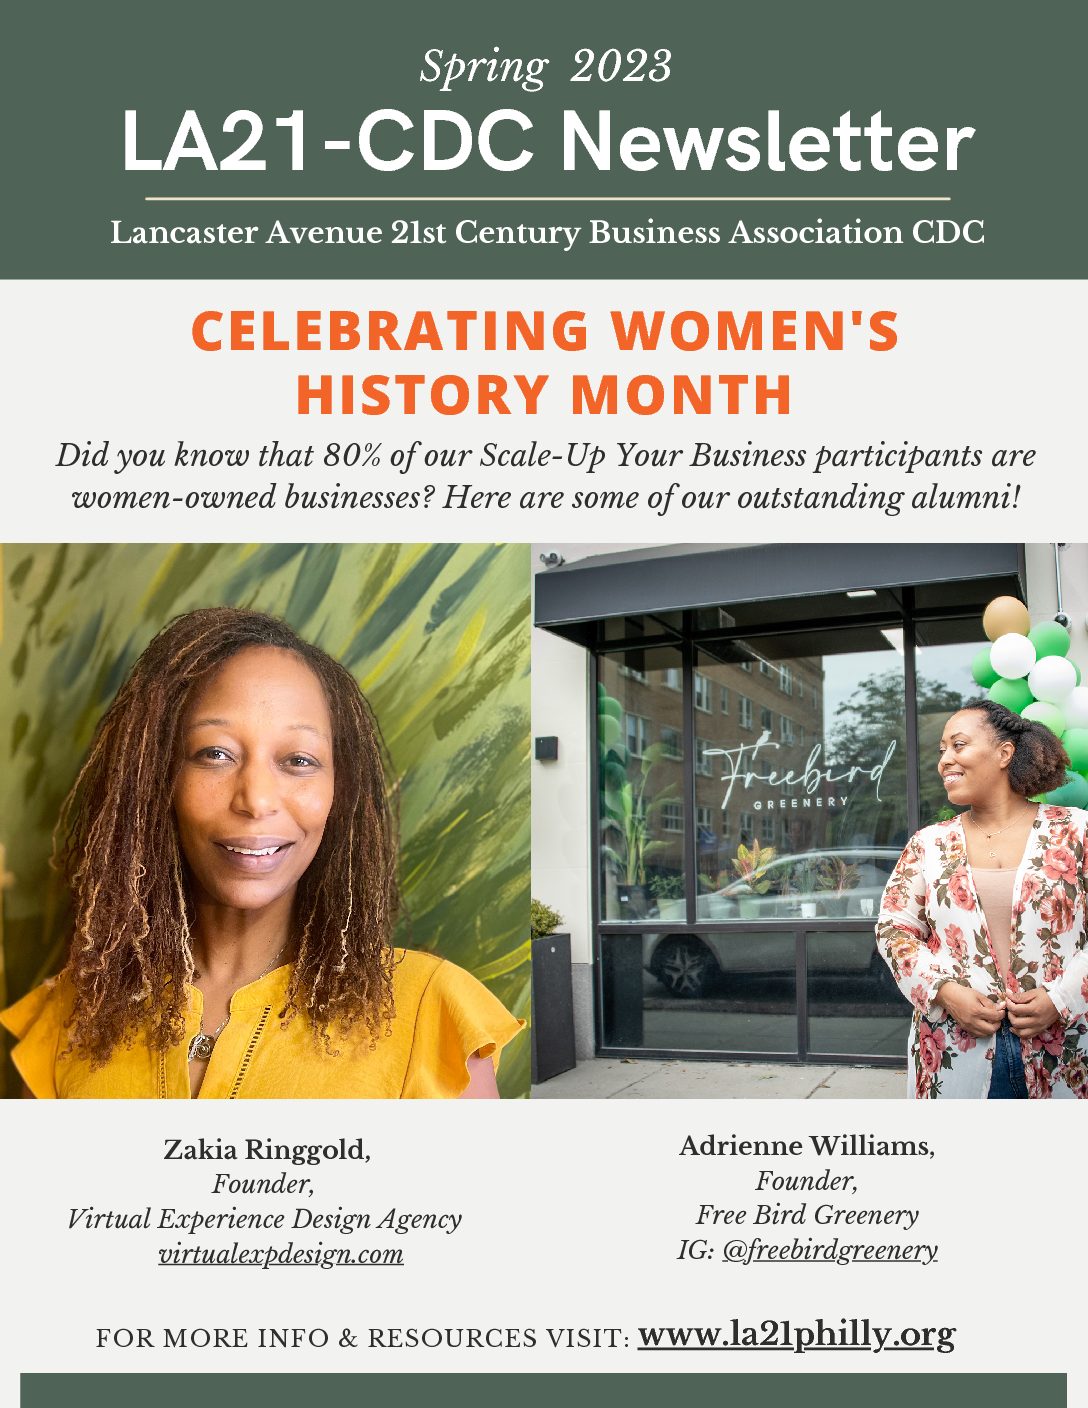 Spring 2023 Newsletter – Celebrating Women’s History Month